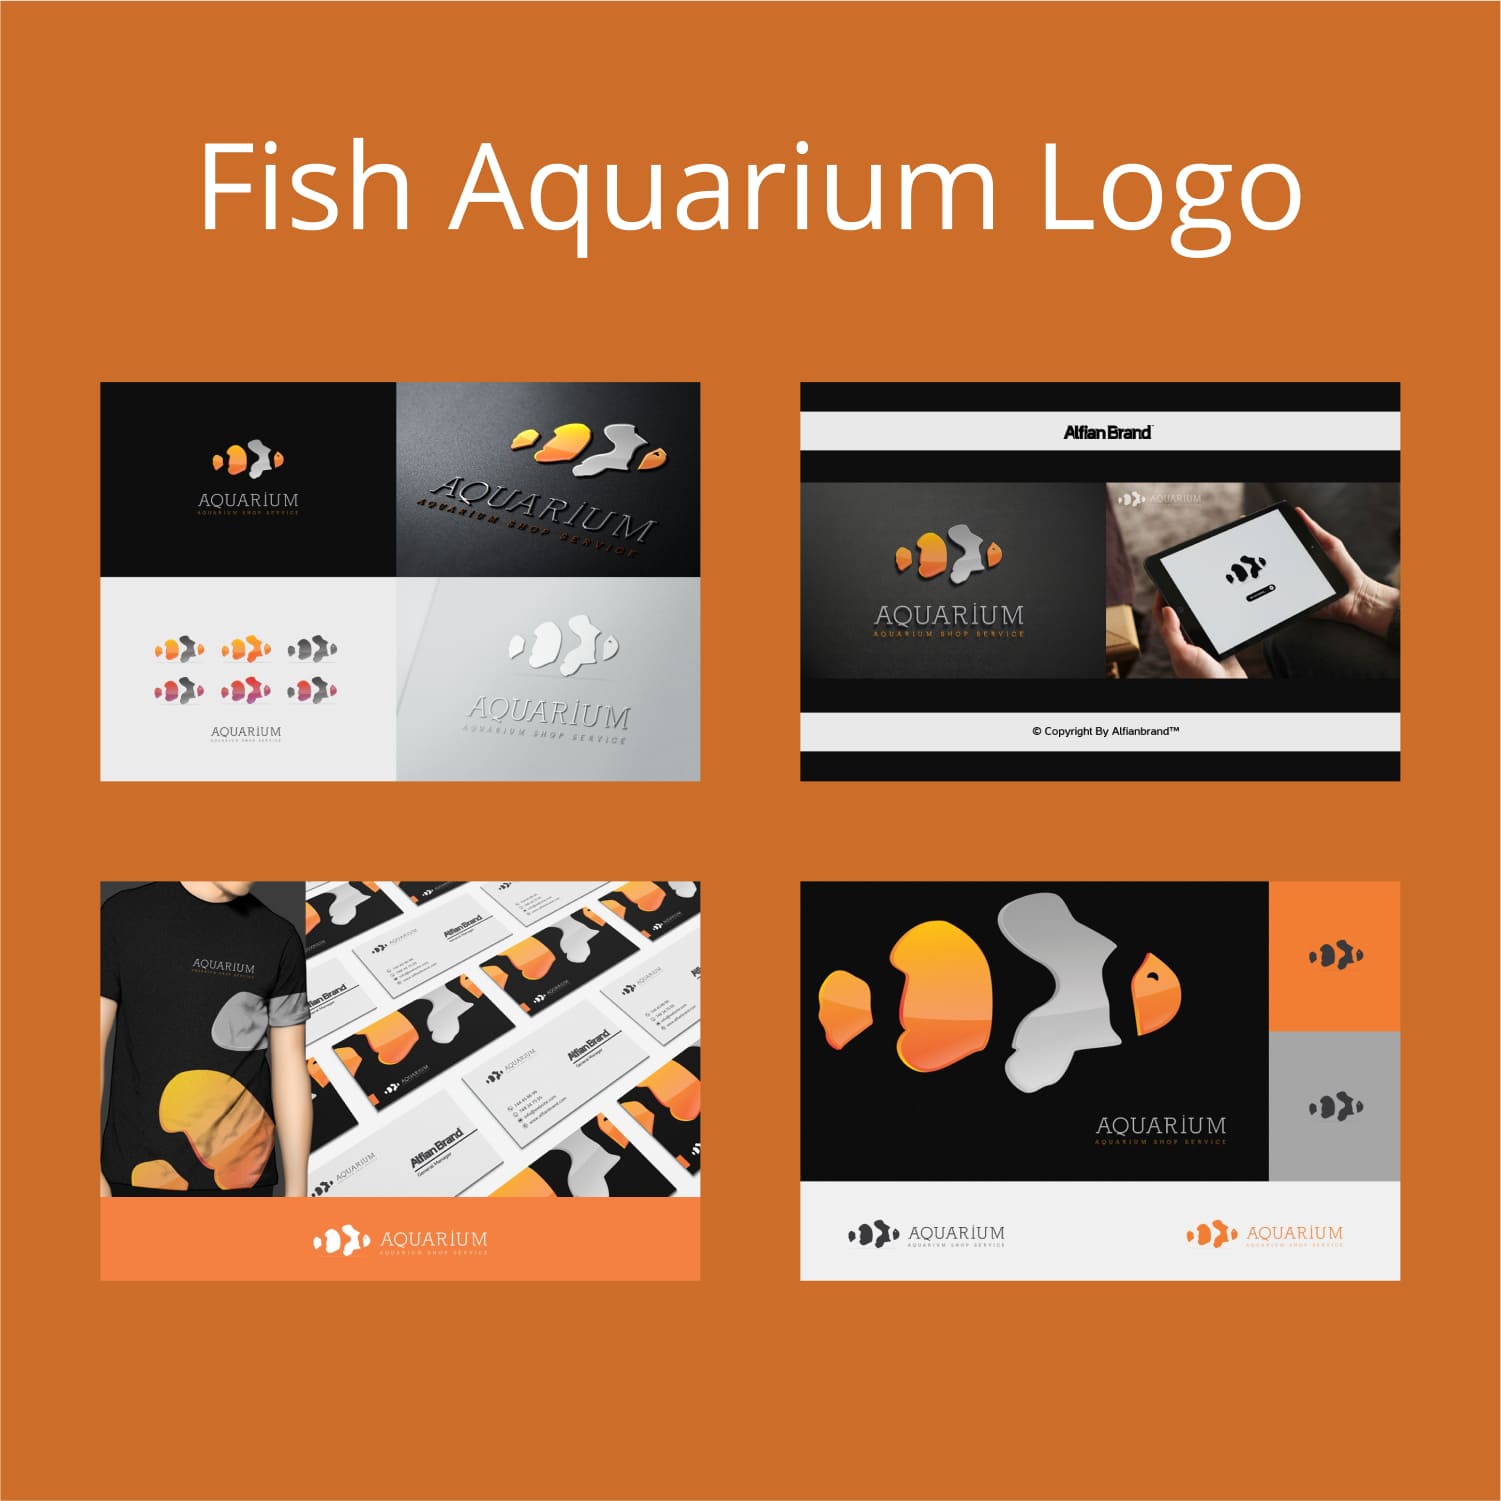 Fish Aquarium Logo.